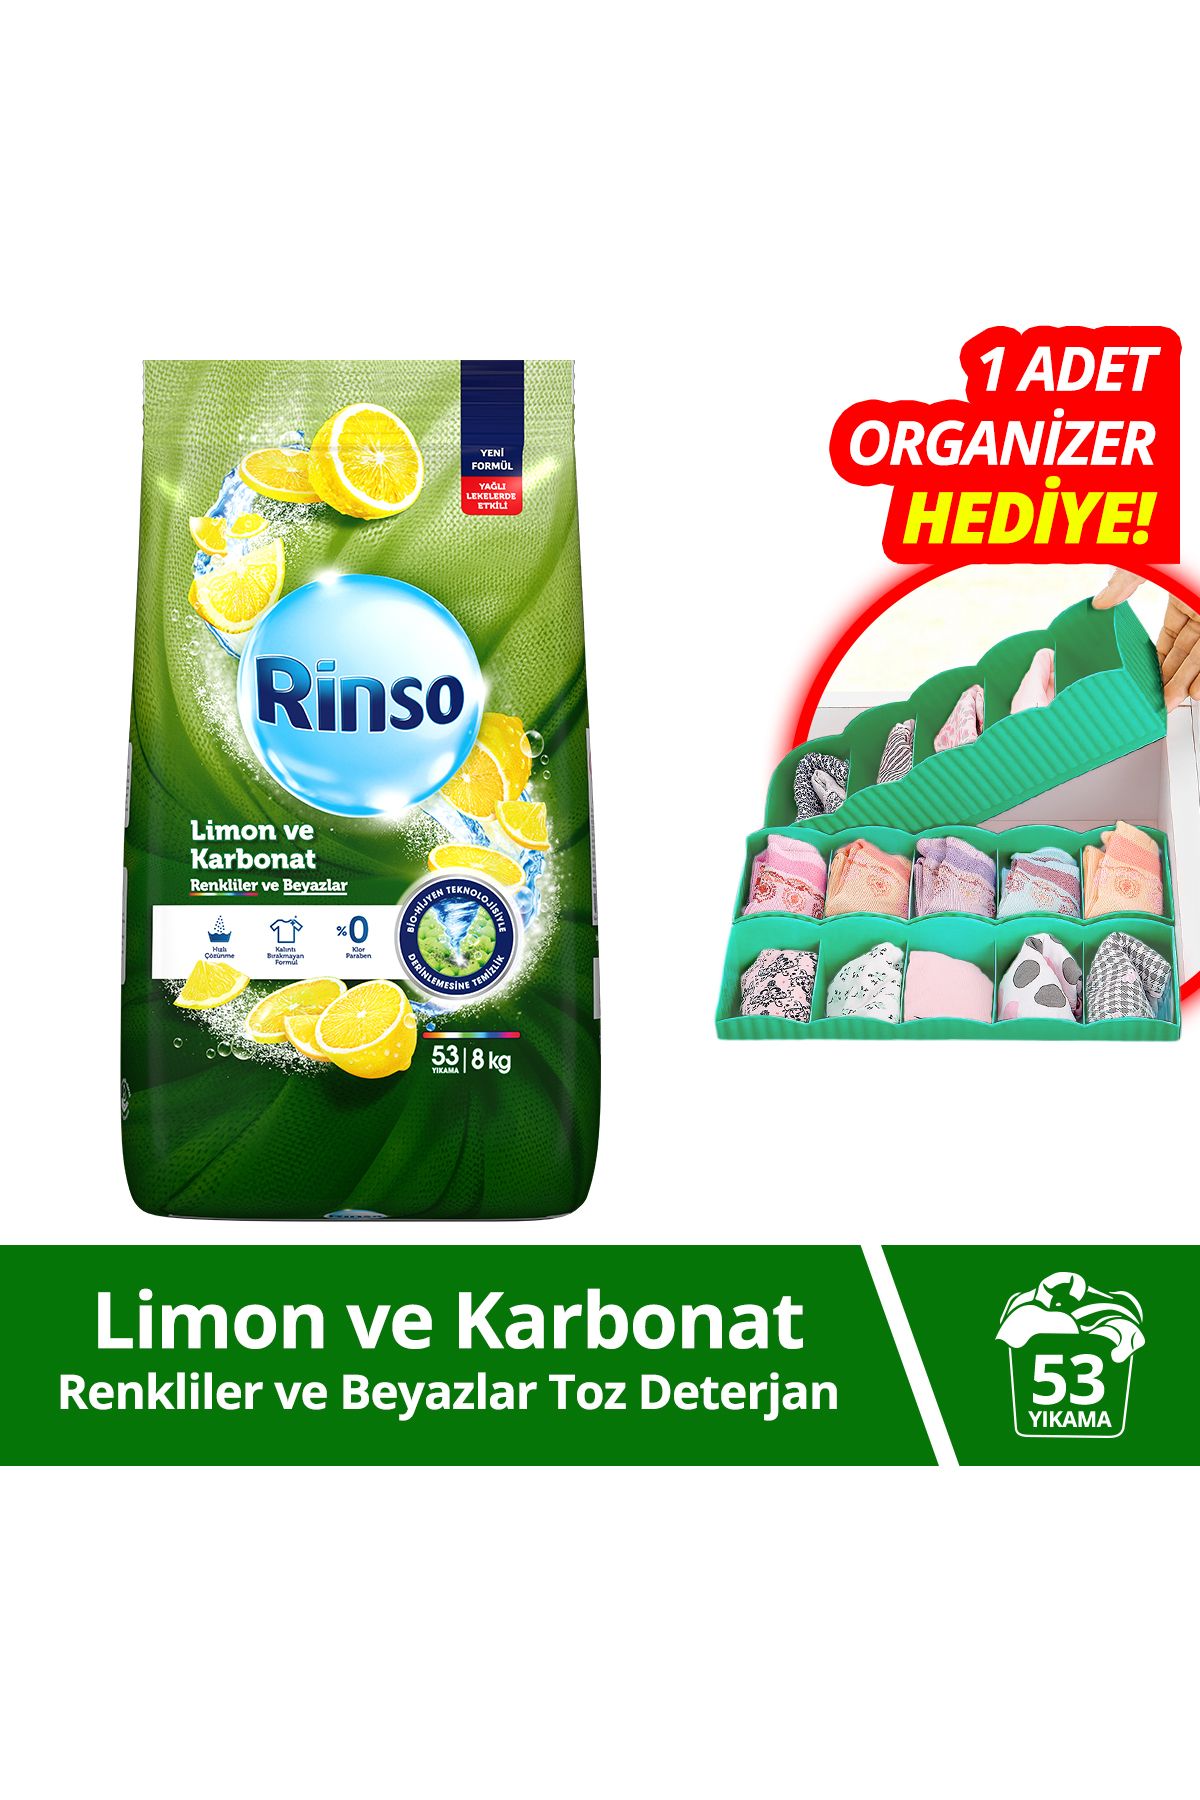 Rinso Toz Çamaşır Deterjanı Limon Ve Karbonat Renkliler Ve Beyazlar 8 Kg X1 1 Adet Organizer Hediy